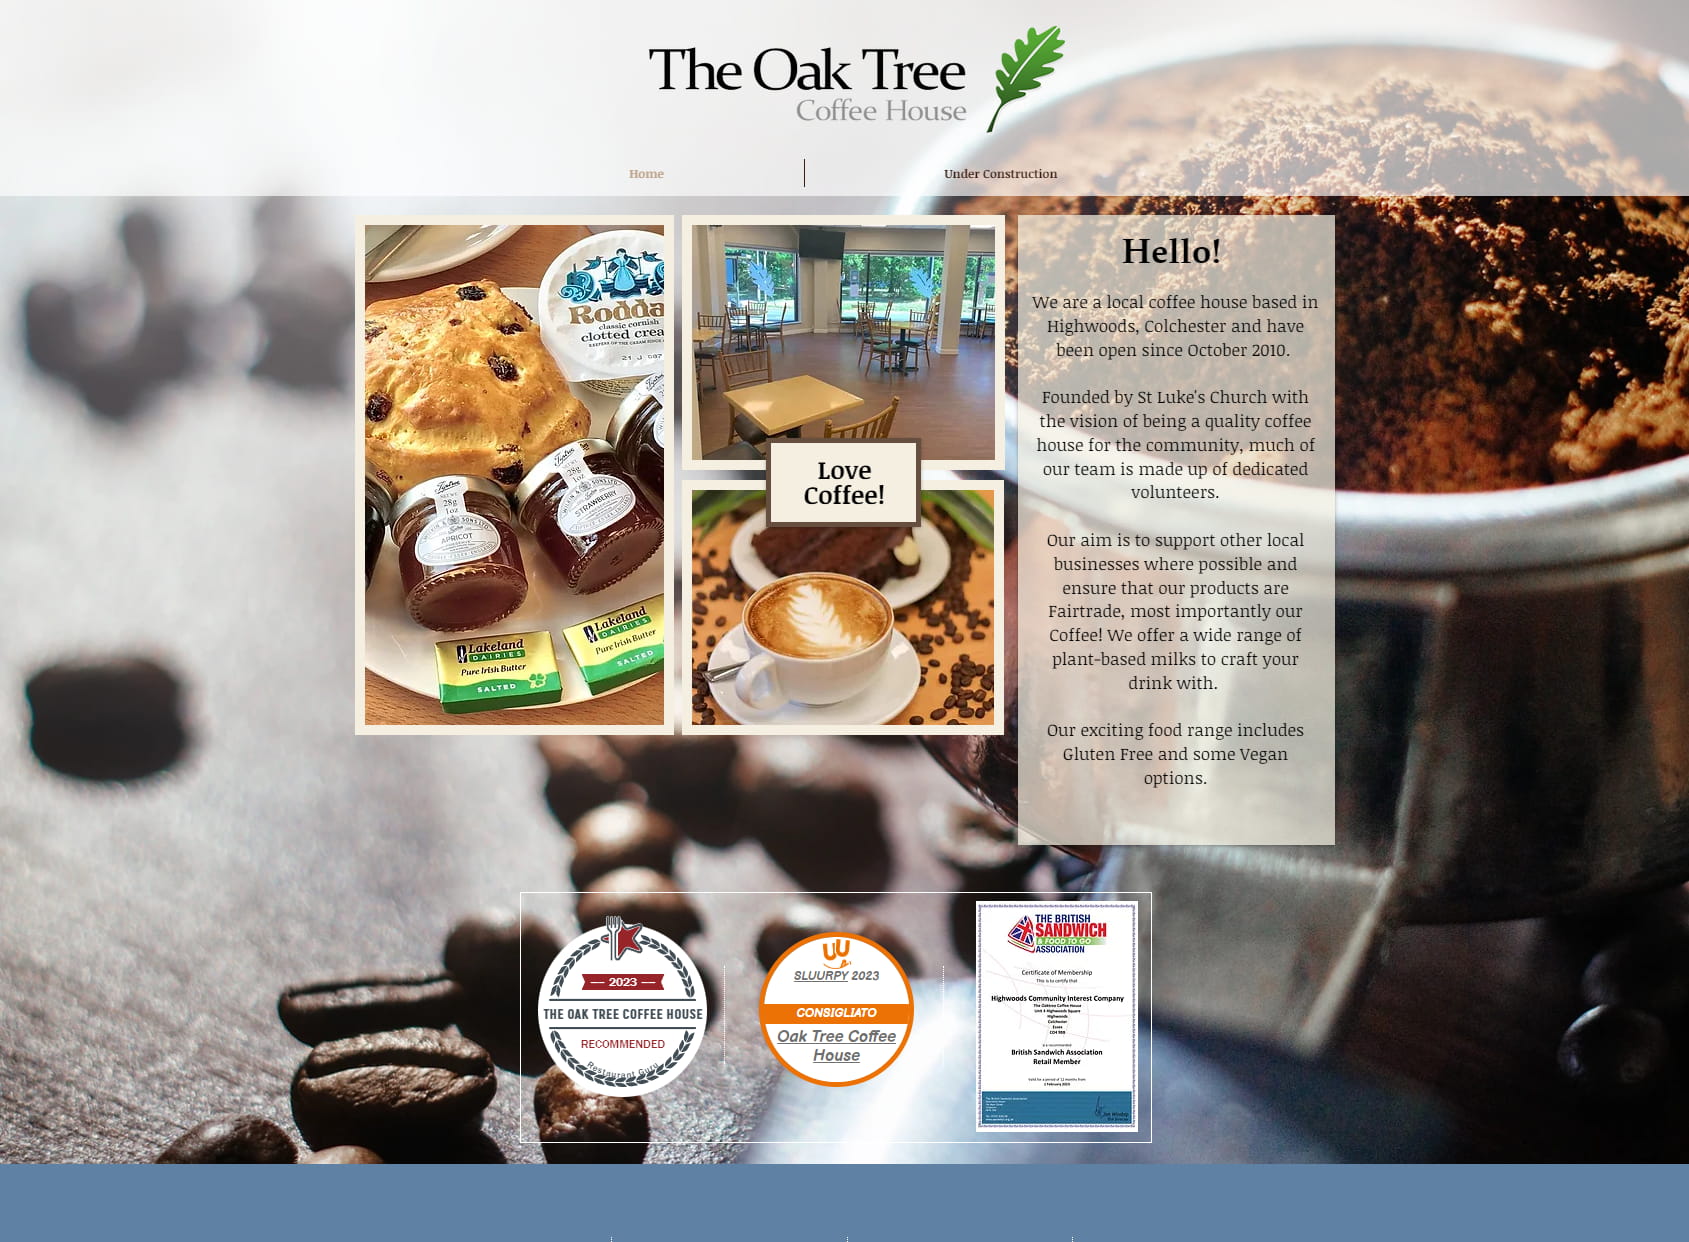 The Oak Tree Coffee House